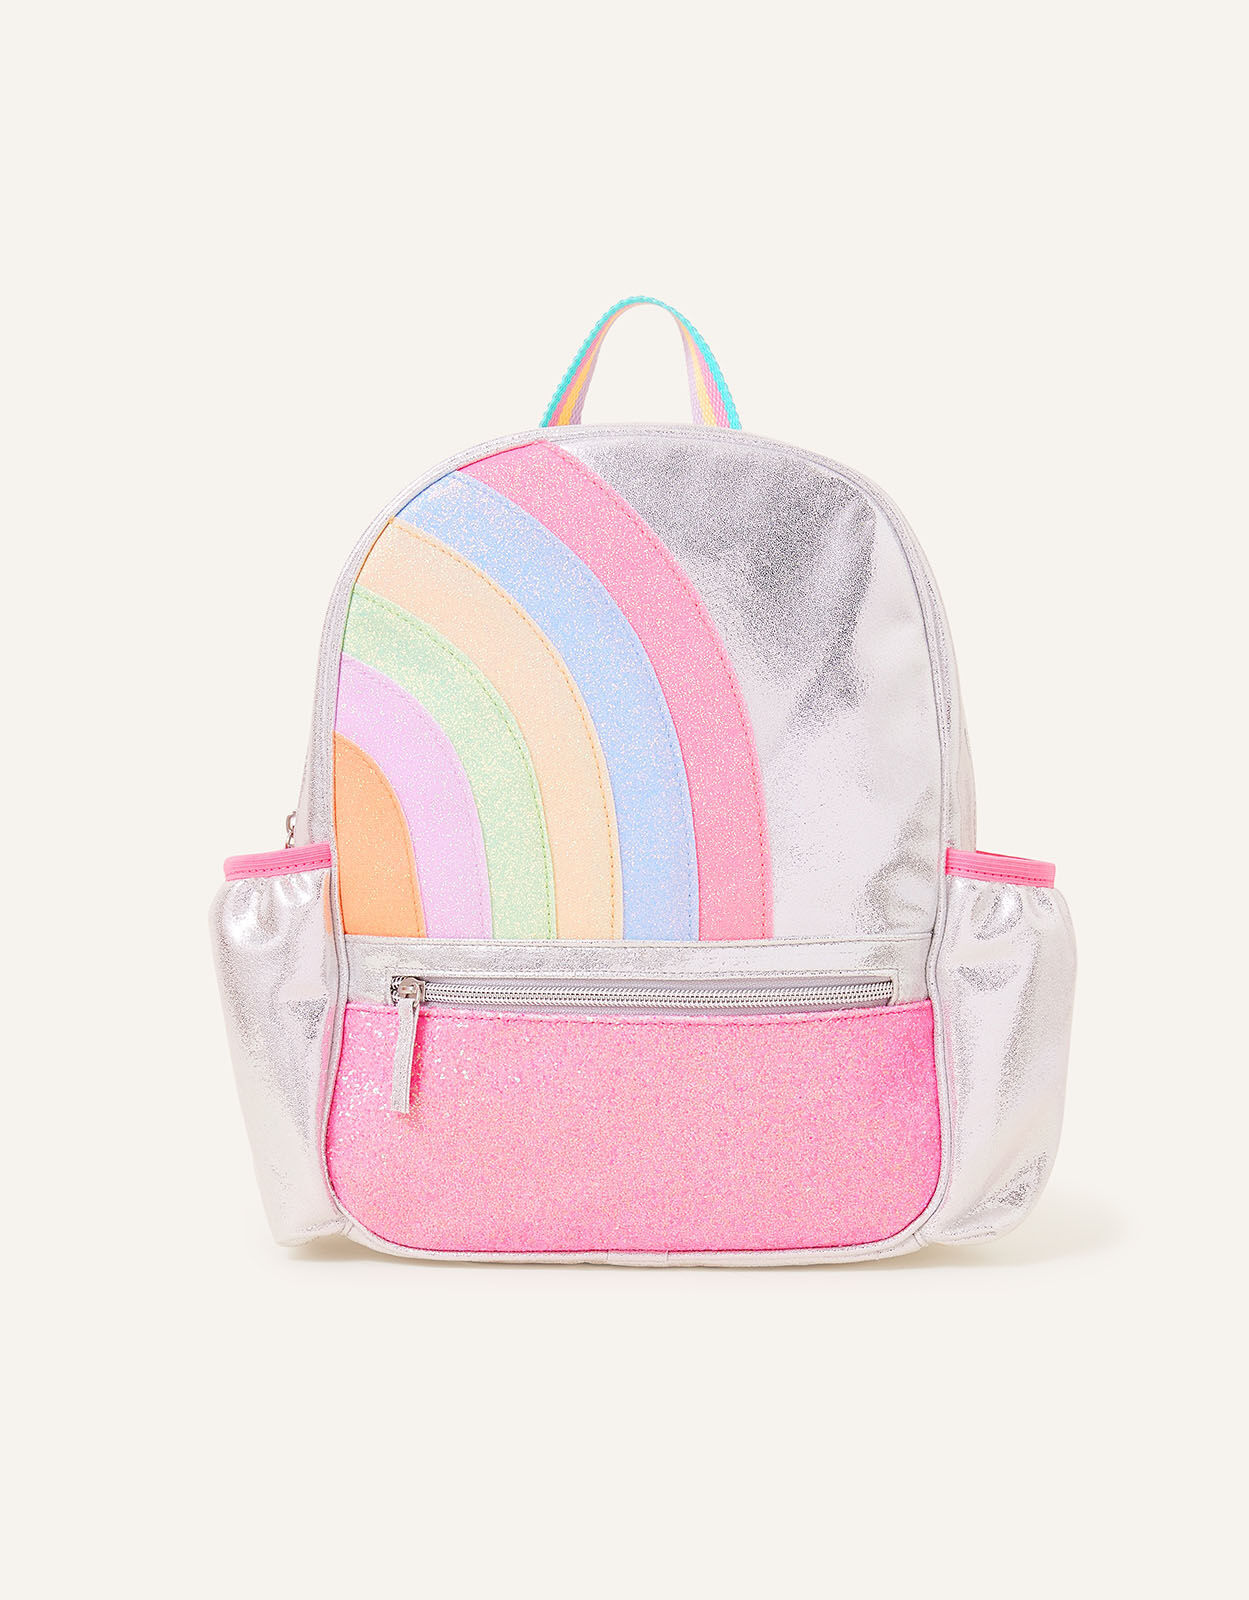 Branded School Backpack For Girls